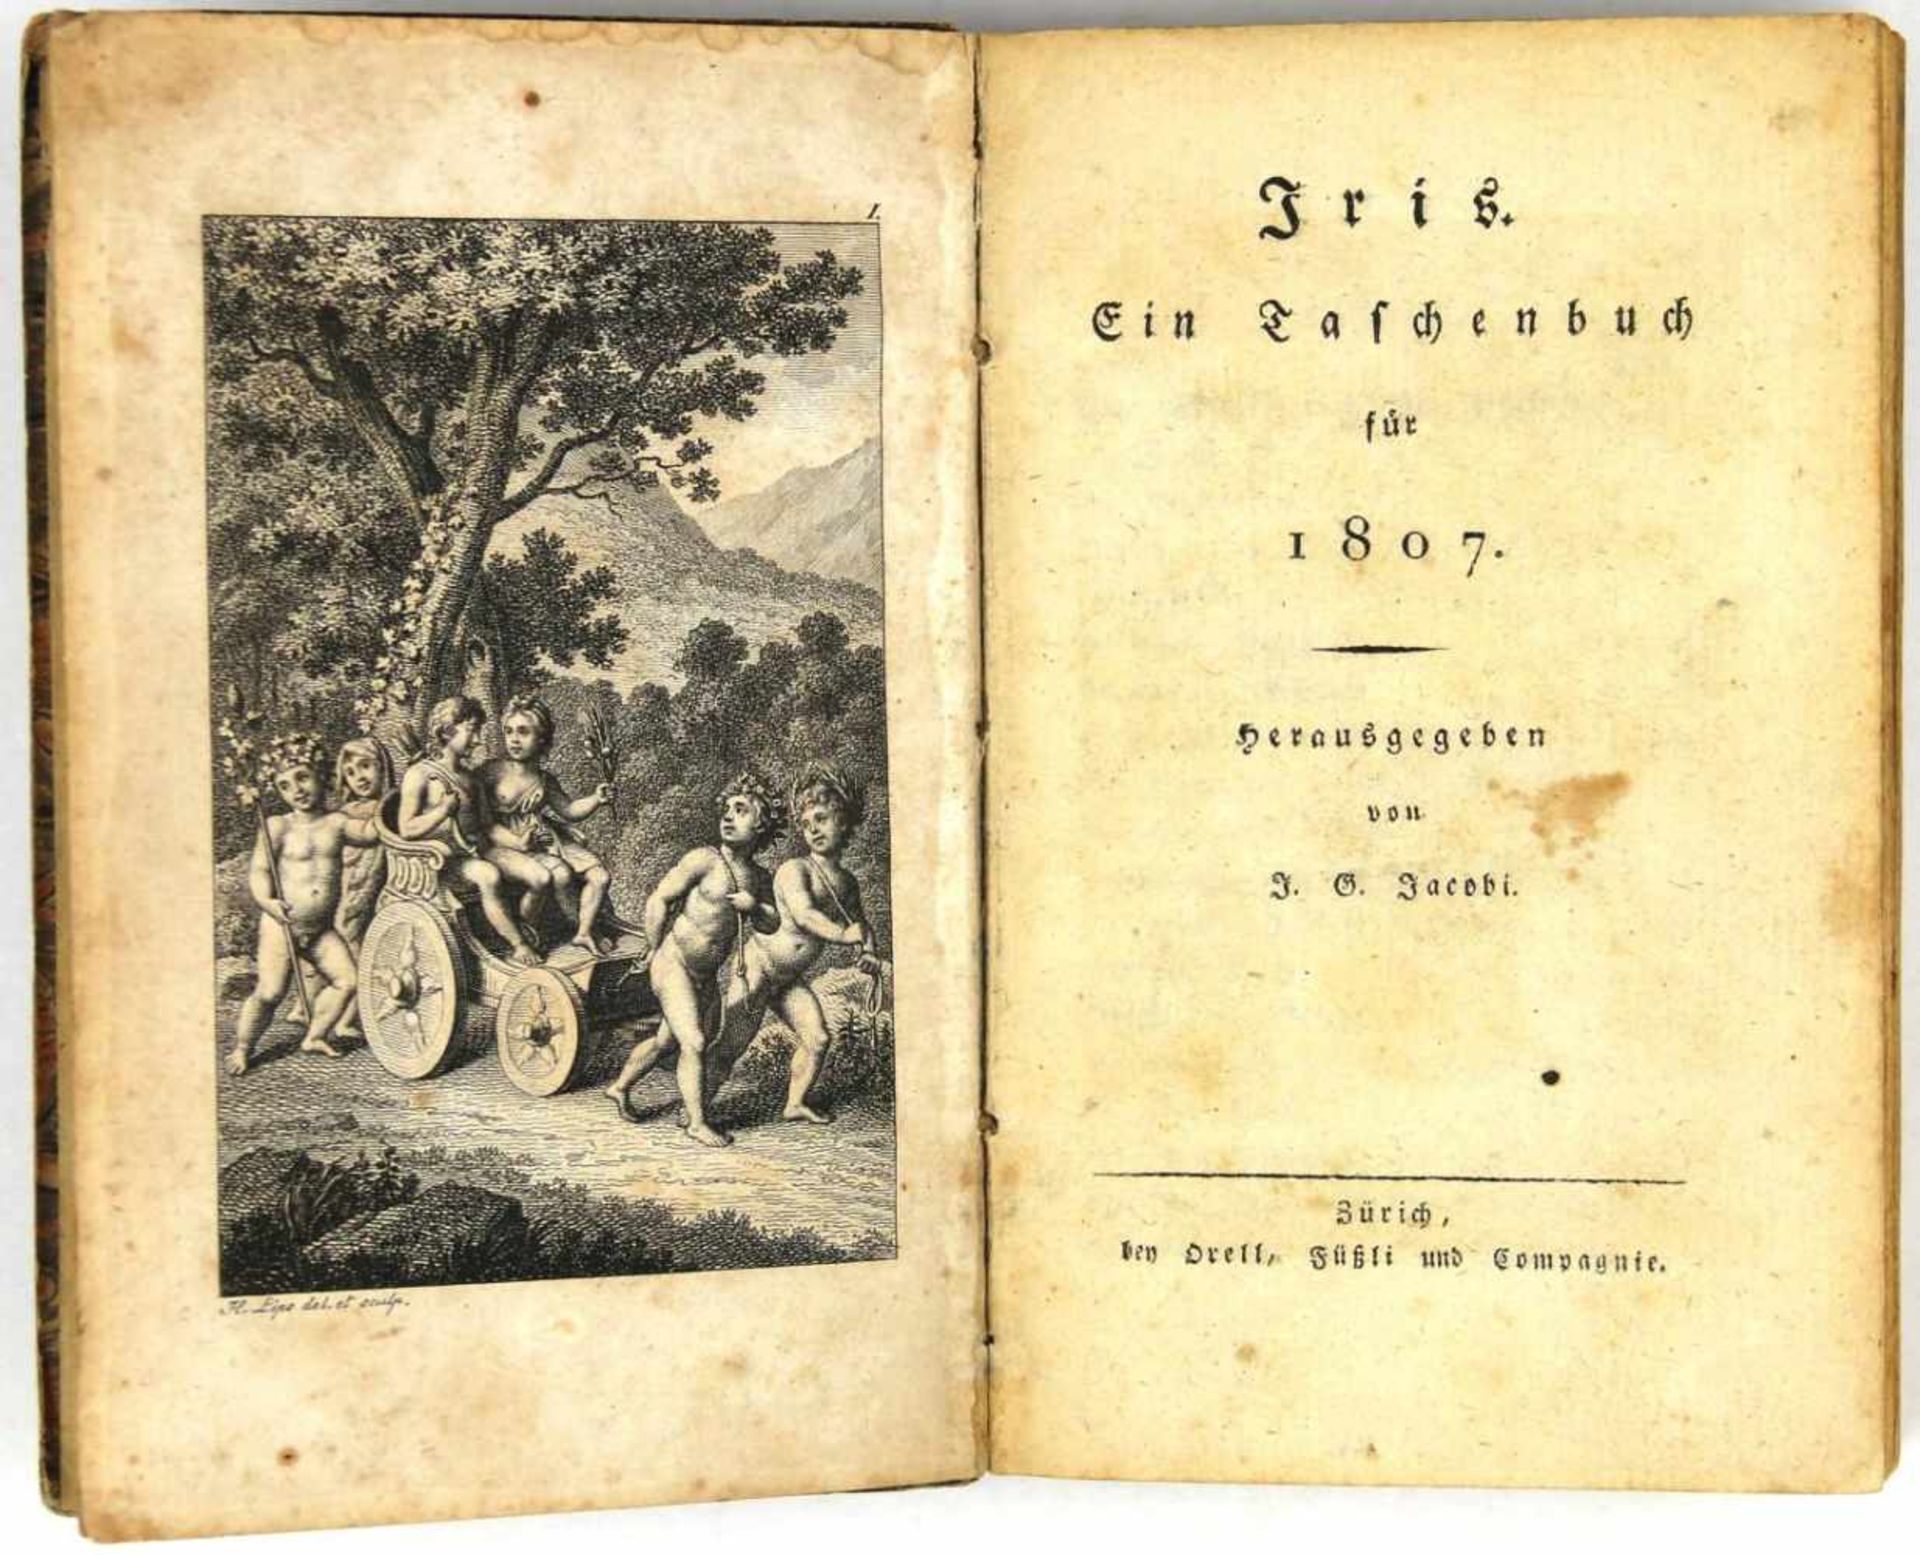 Almanache. -Iris. Ein Taschenbuch für 1807. Herausgegeben von Johann Georg Jacobi. Zürich, Orell,